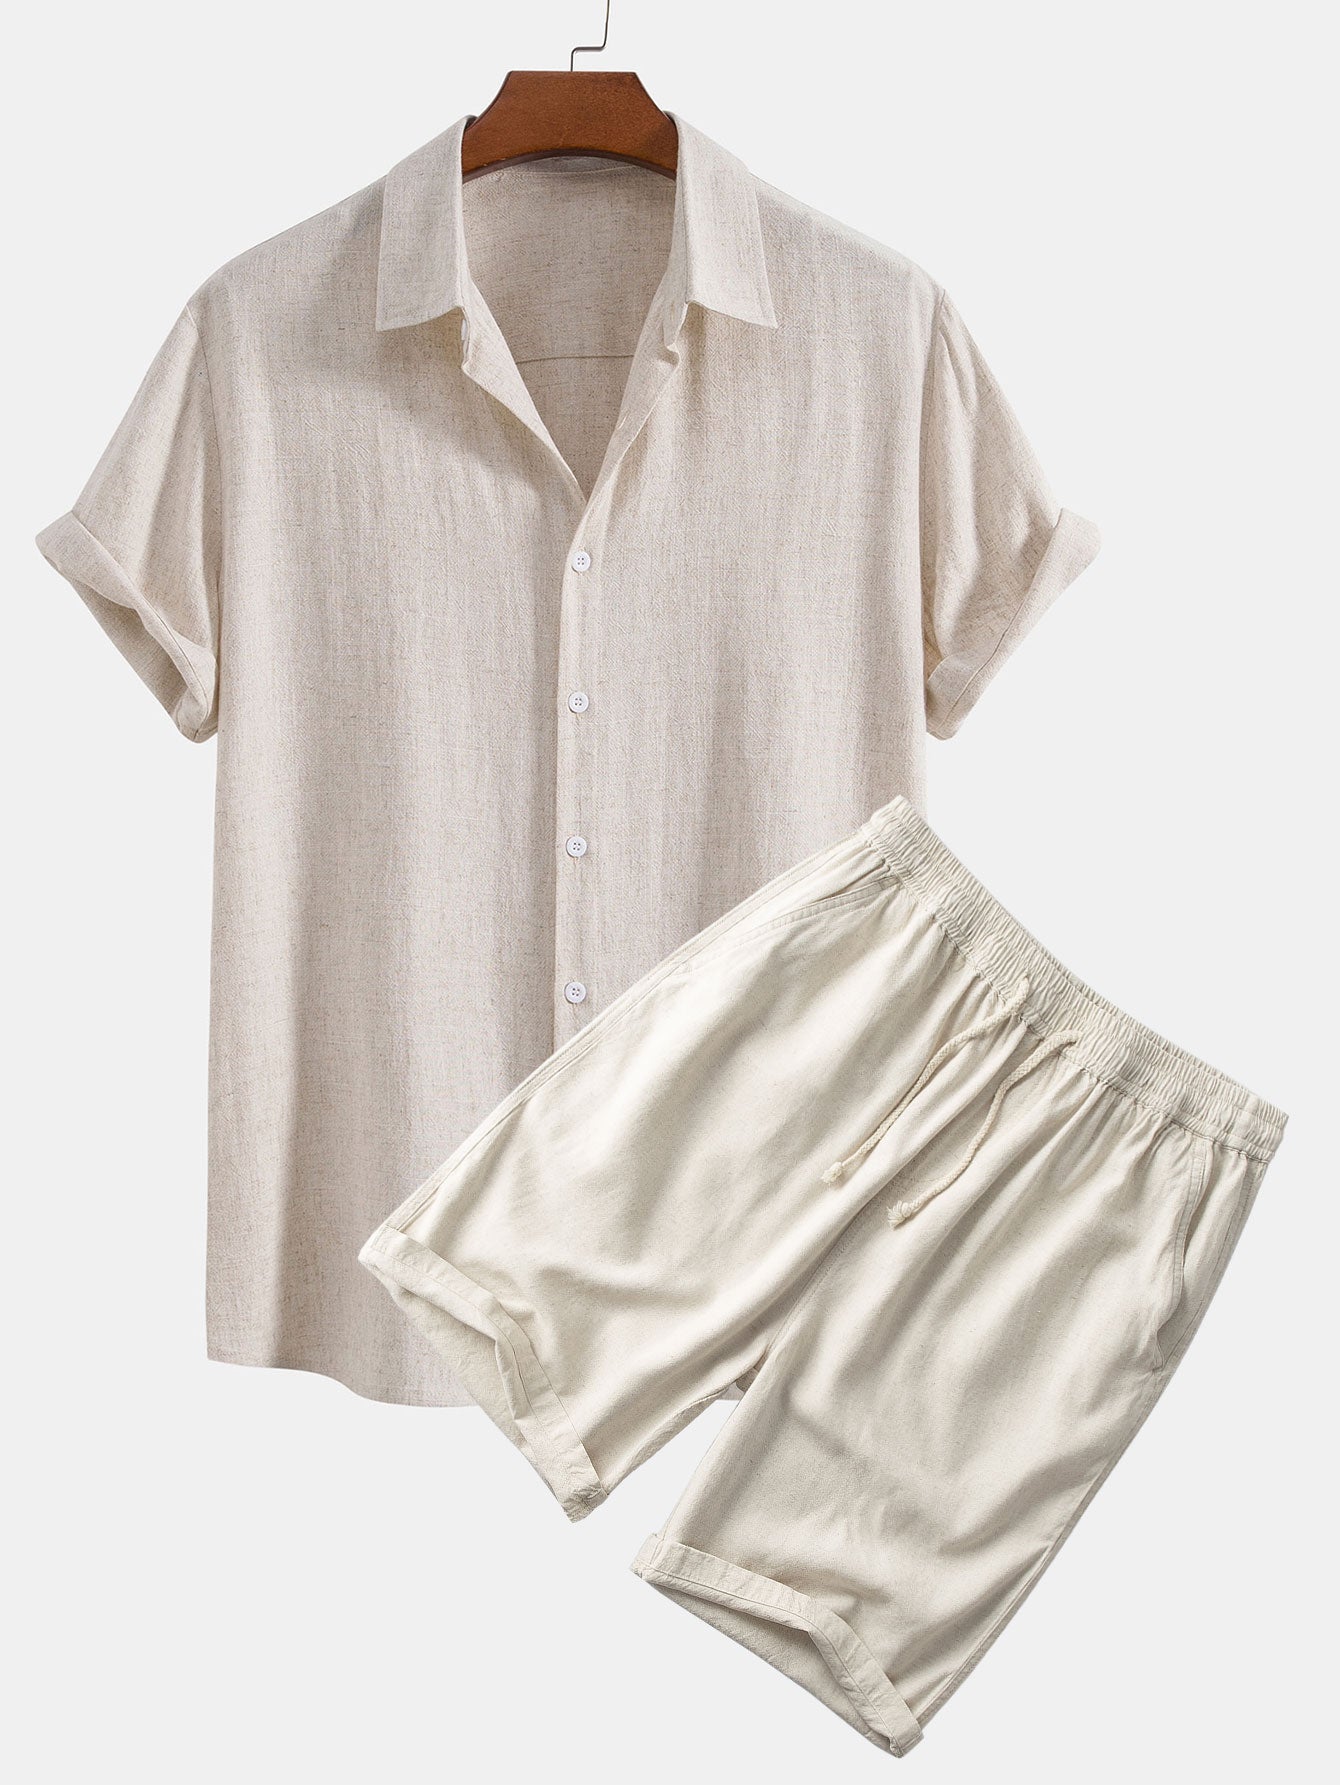 Linen Rayon Blend Button Up Shirt & Linen Cotton Blend 11" Shorts